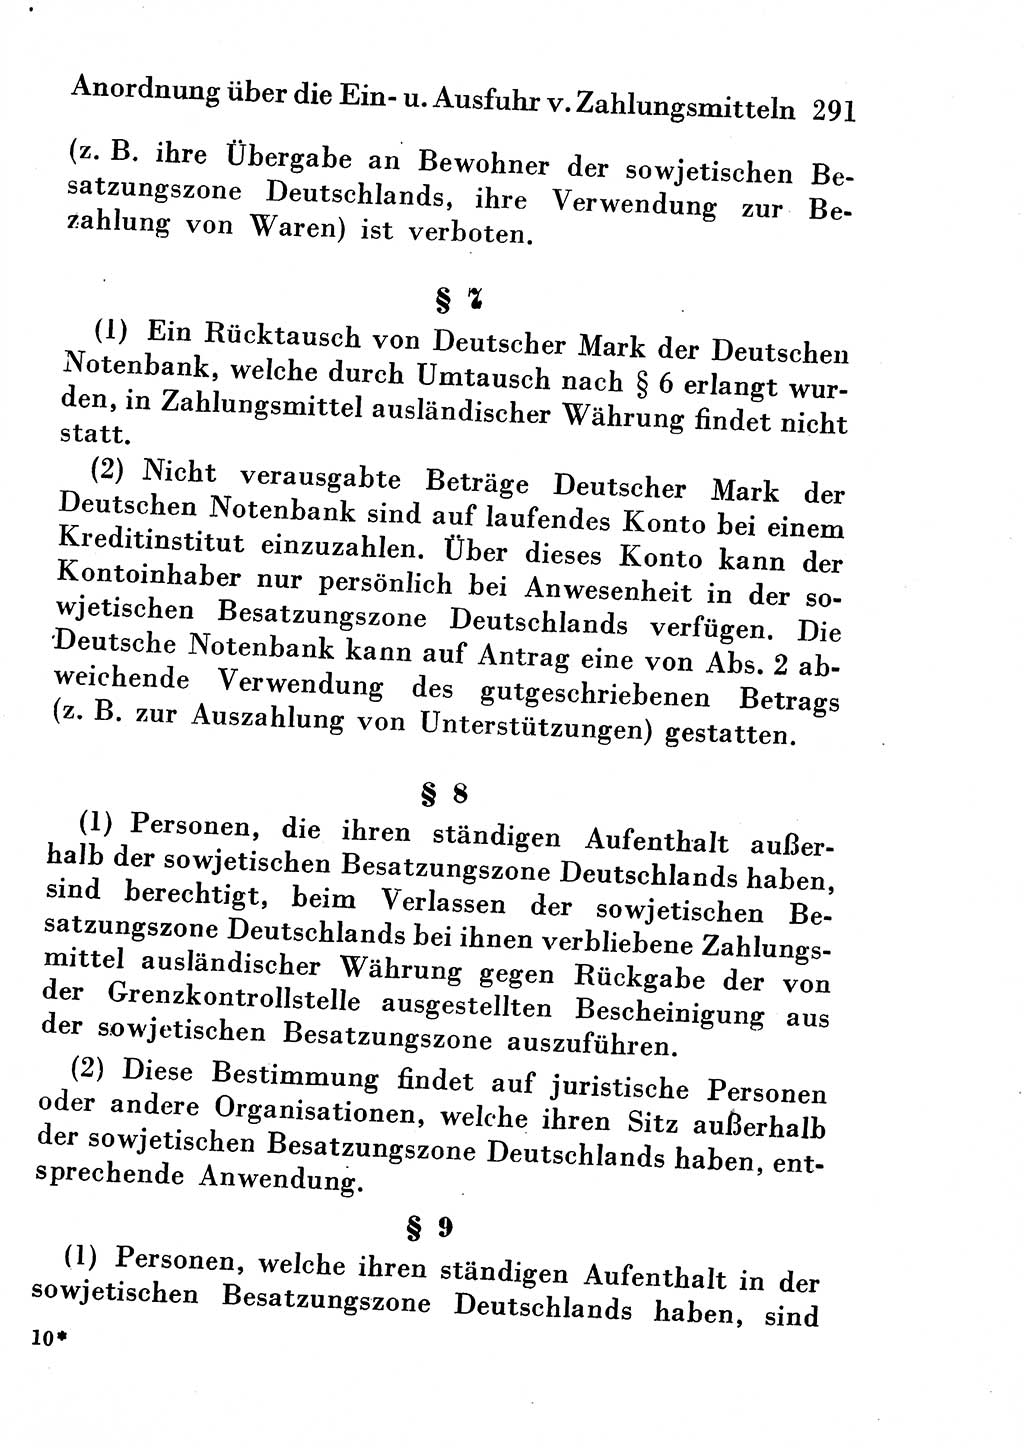 Strafgesetzbuch (StGB) und andere Strafgesetze [Deutsche Demokratische Republik (DDR)] 1954, Seite 291 (StGB Strafges. DDR 1954, S. 291)